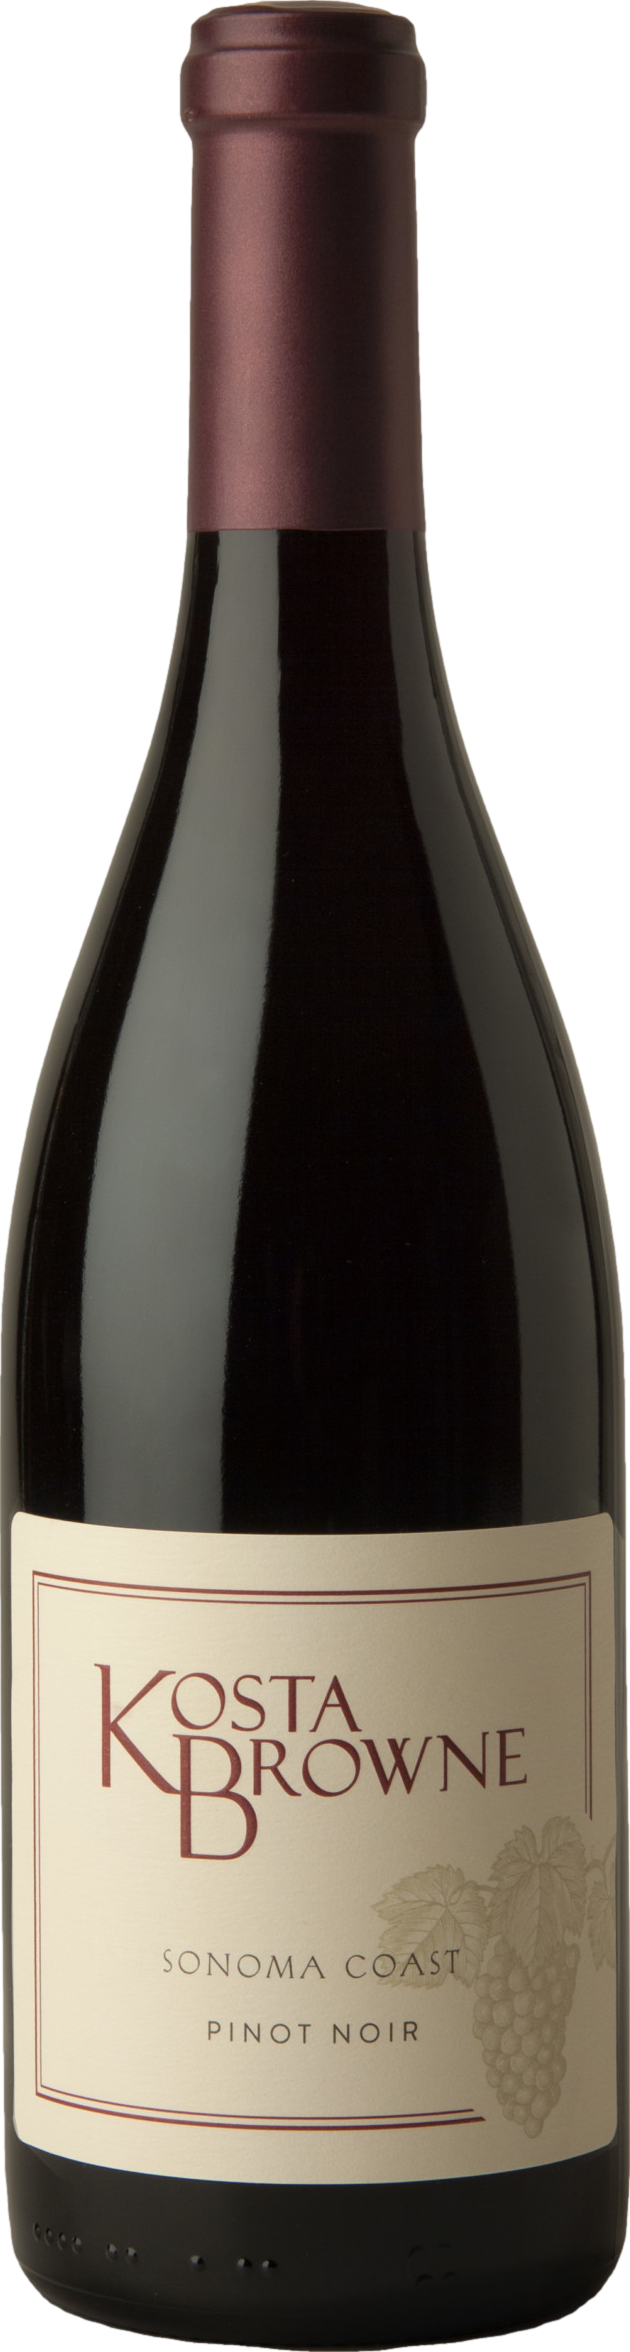 Kosta Browne Sonoma Coast Pinot Noir 2020 Duckhorn 8wines DACH